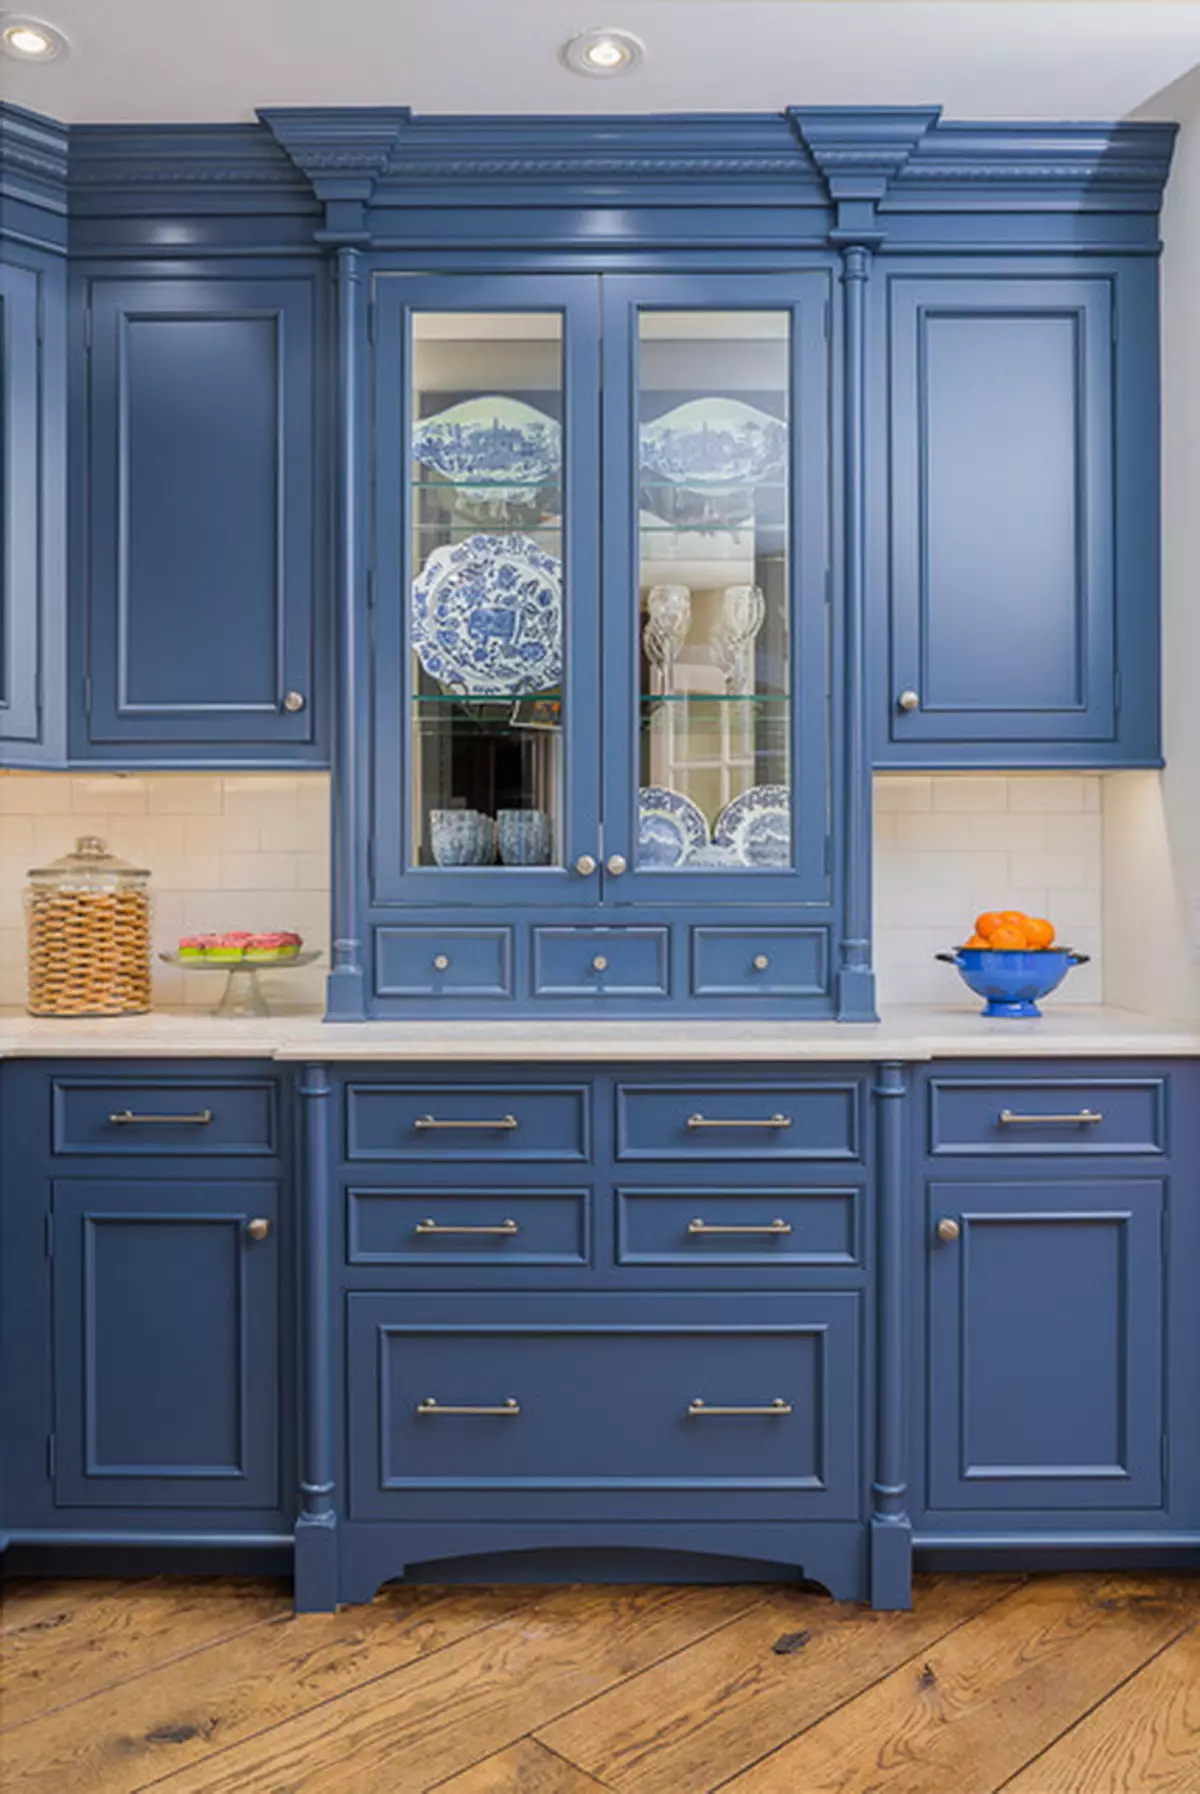 Bucătărie albastră (82 fotografii): Ce culori sunt combinate în interiorul unui set de bucătărie albastră? Design de bucătărie în tonuri albastre ușoare și întunecate 9555_57